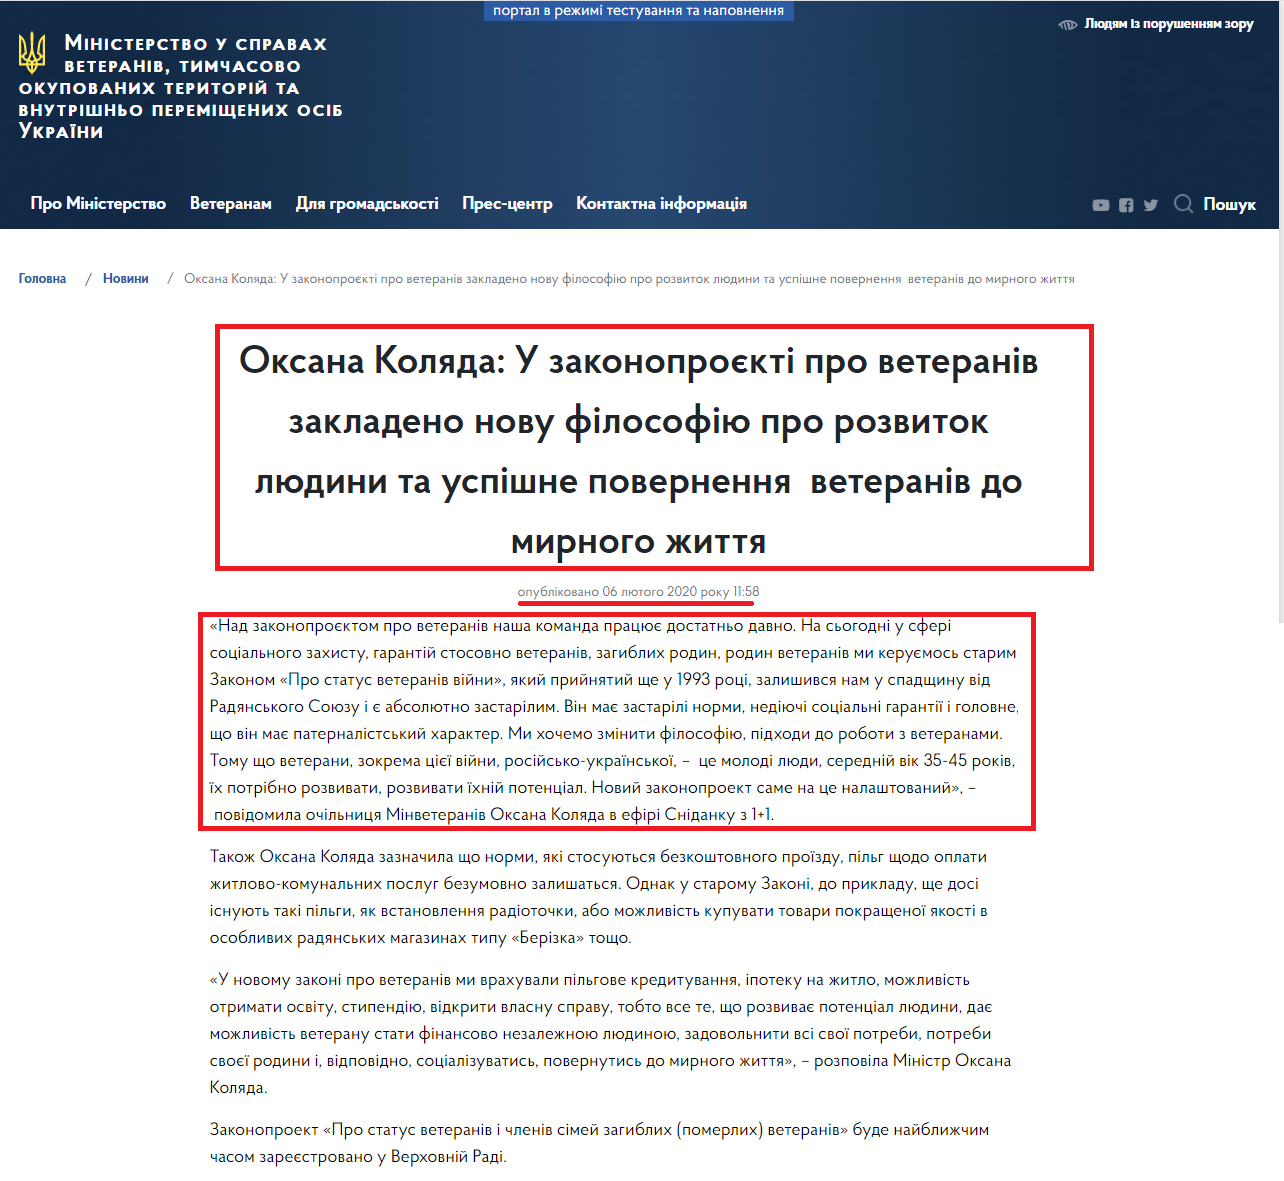 https://mva.gov.ua/ua/news/oksana-kolyada-u-zakonoproyekti-pro-veteraniv-zakladeno-novu-filosofiyu-pro-rozvitok-lyudini-ta-uspishne-povernennya-veteraniv-do-mirnogo-zhittya